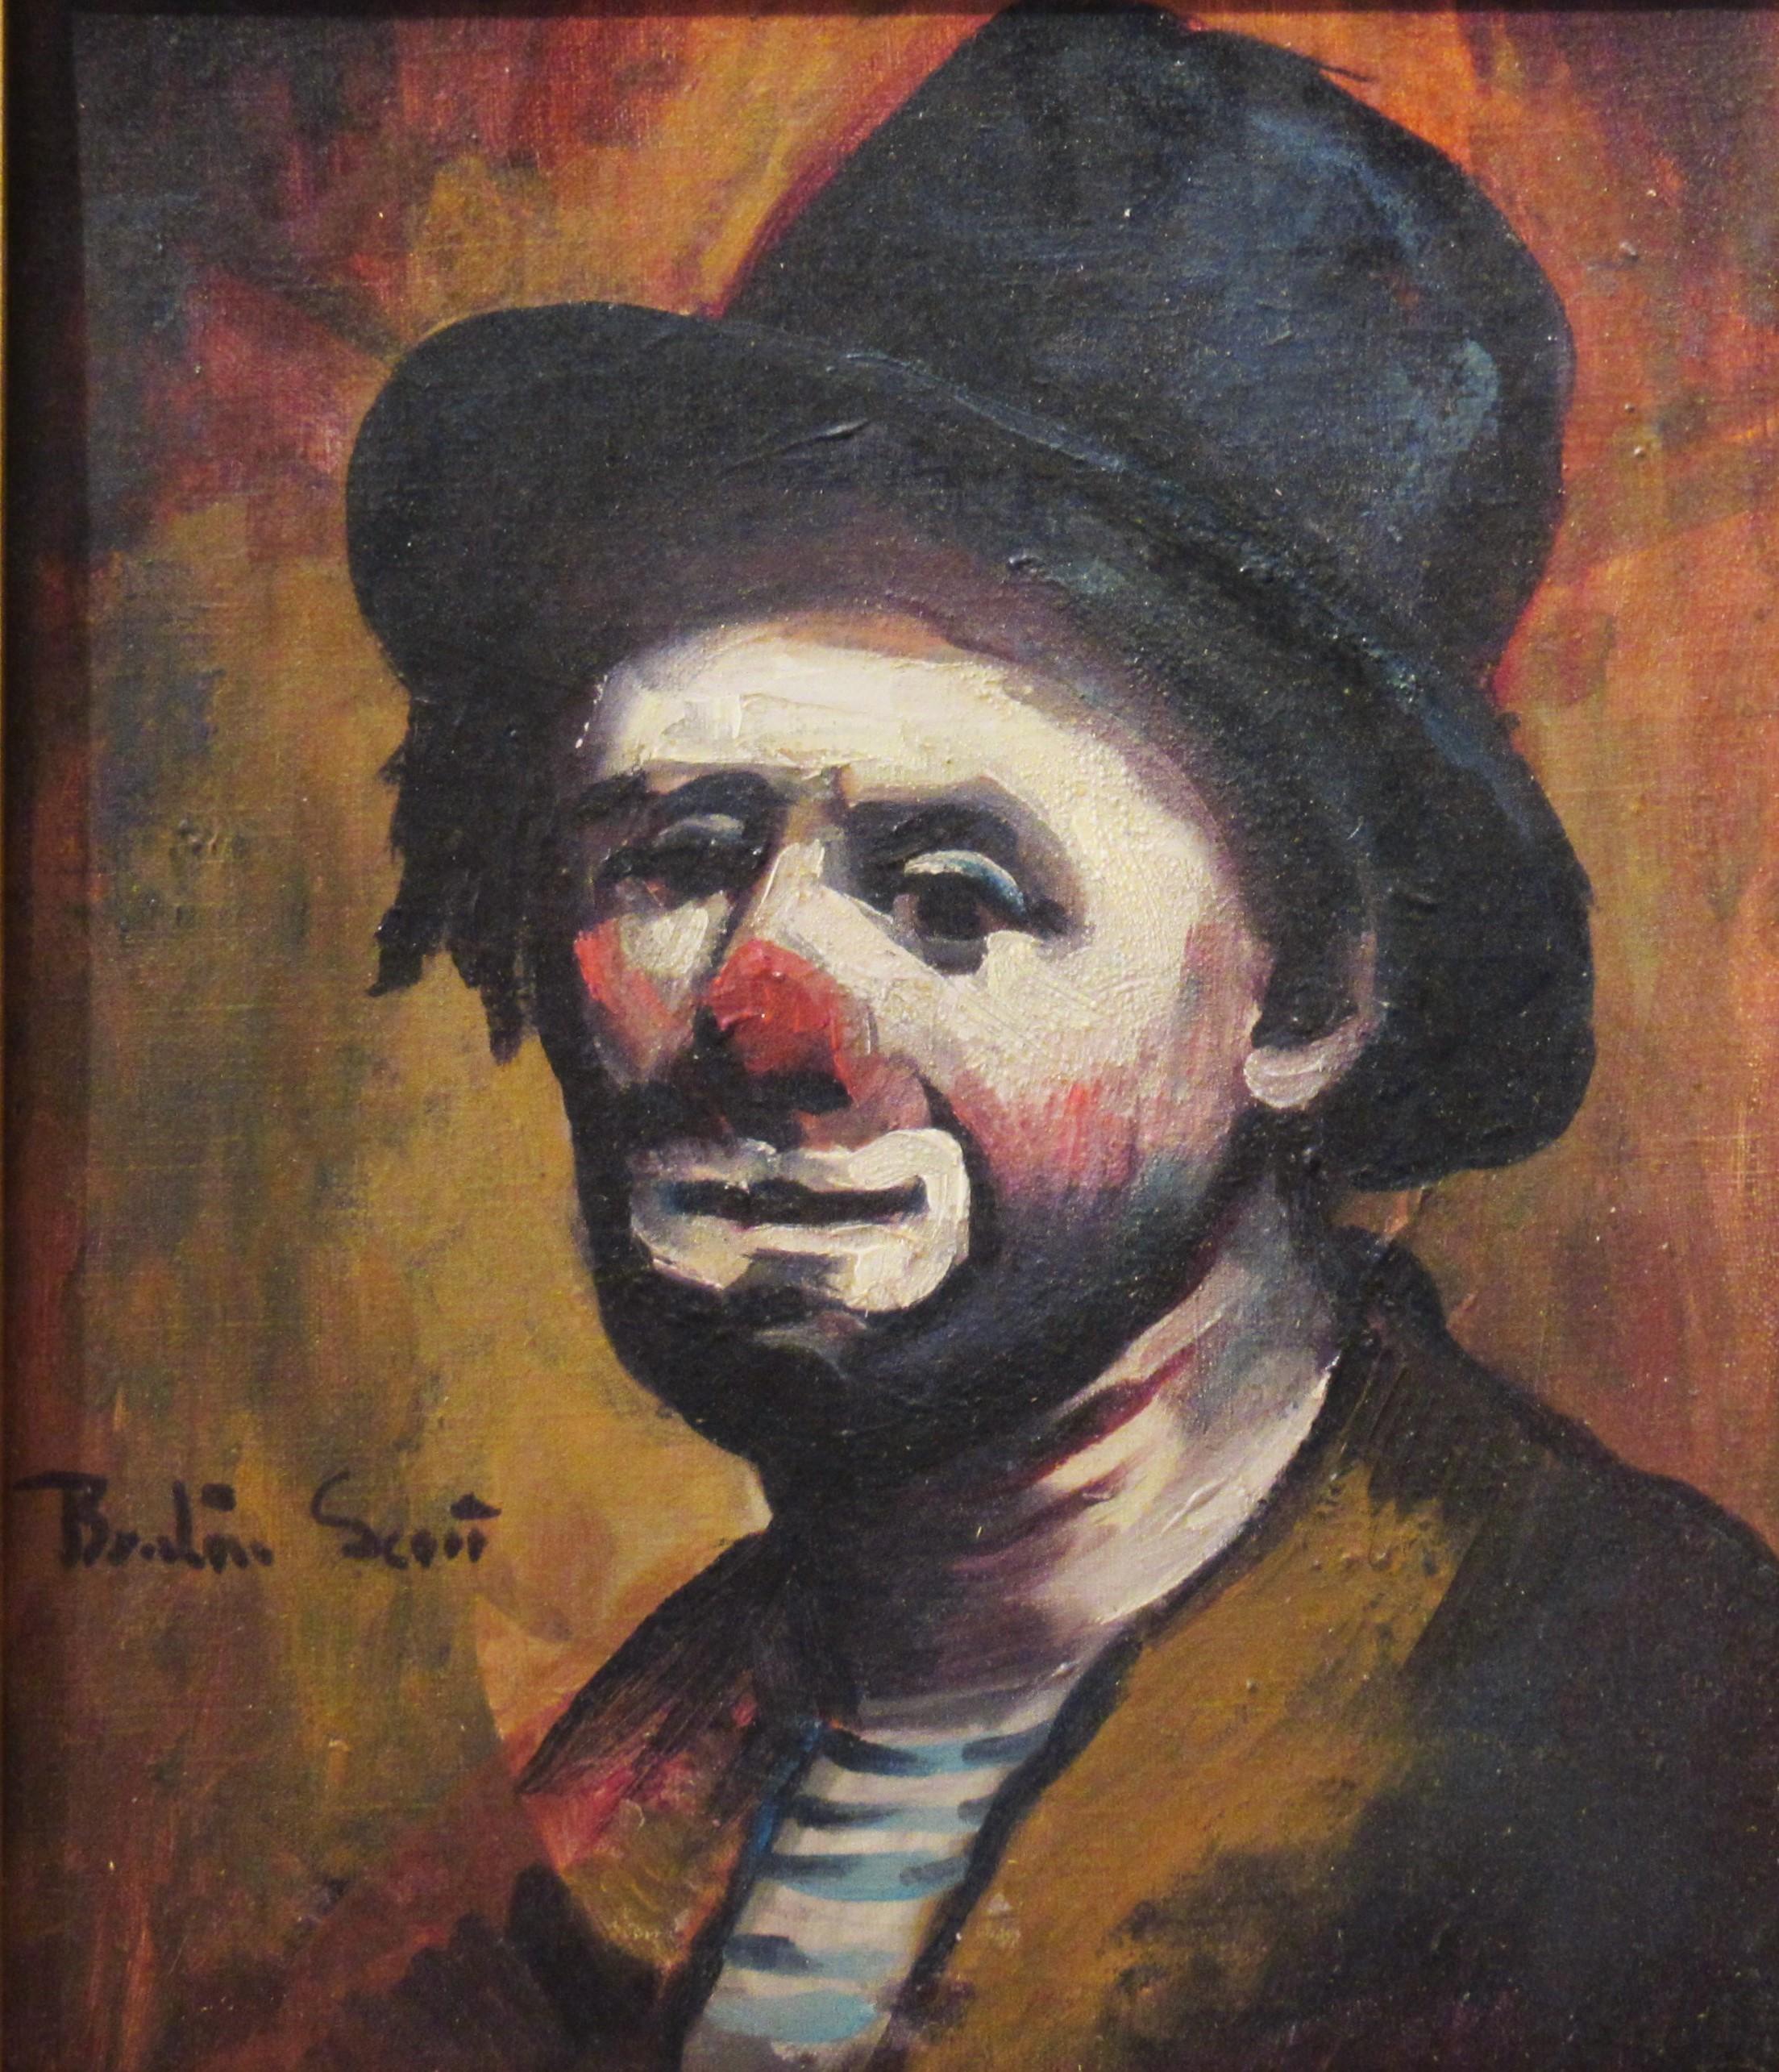 Clown du cirque de Medrano, France - Painting de Benton Scott